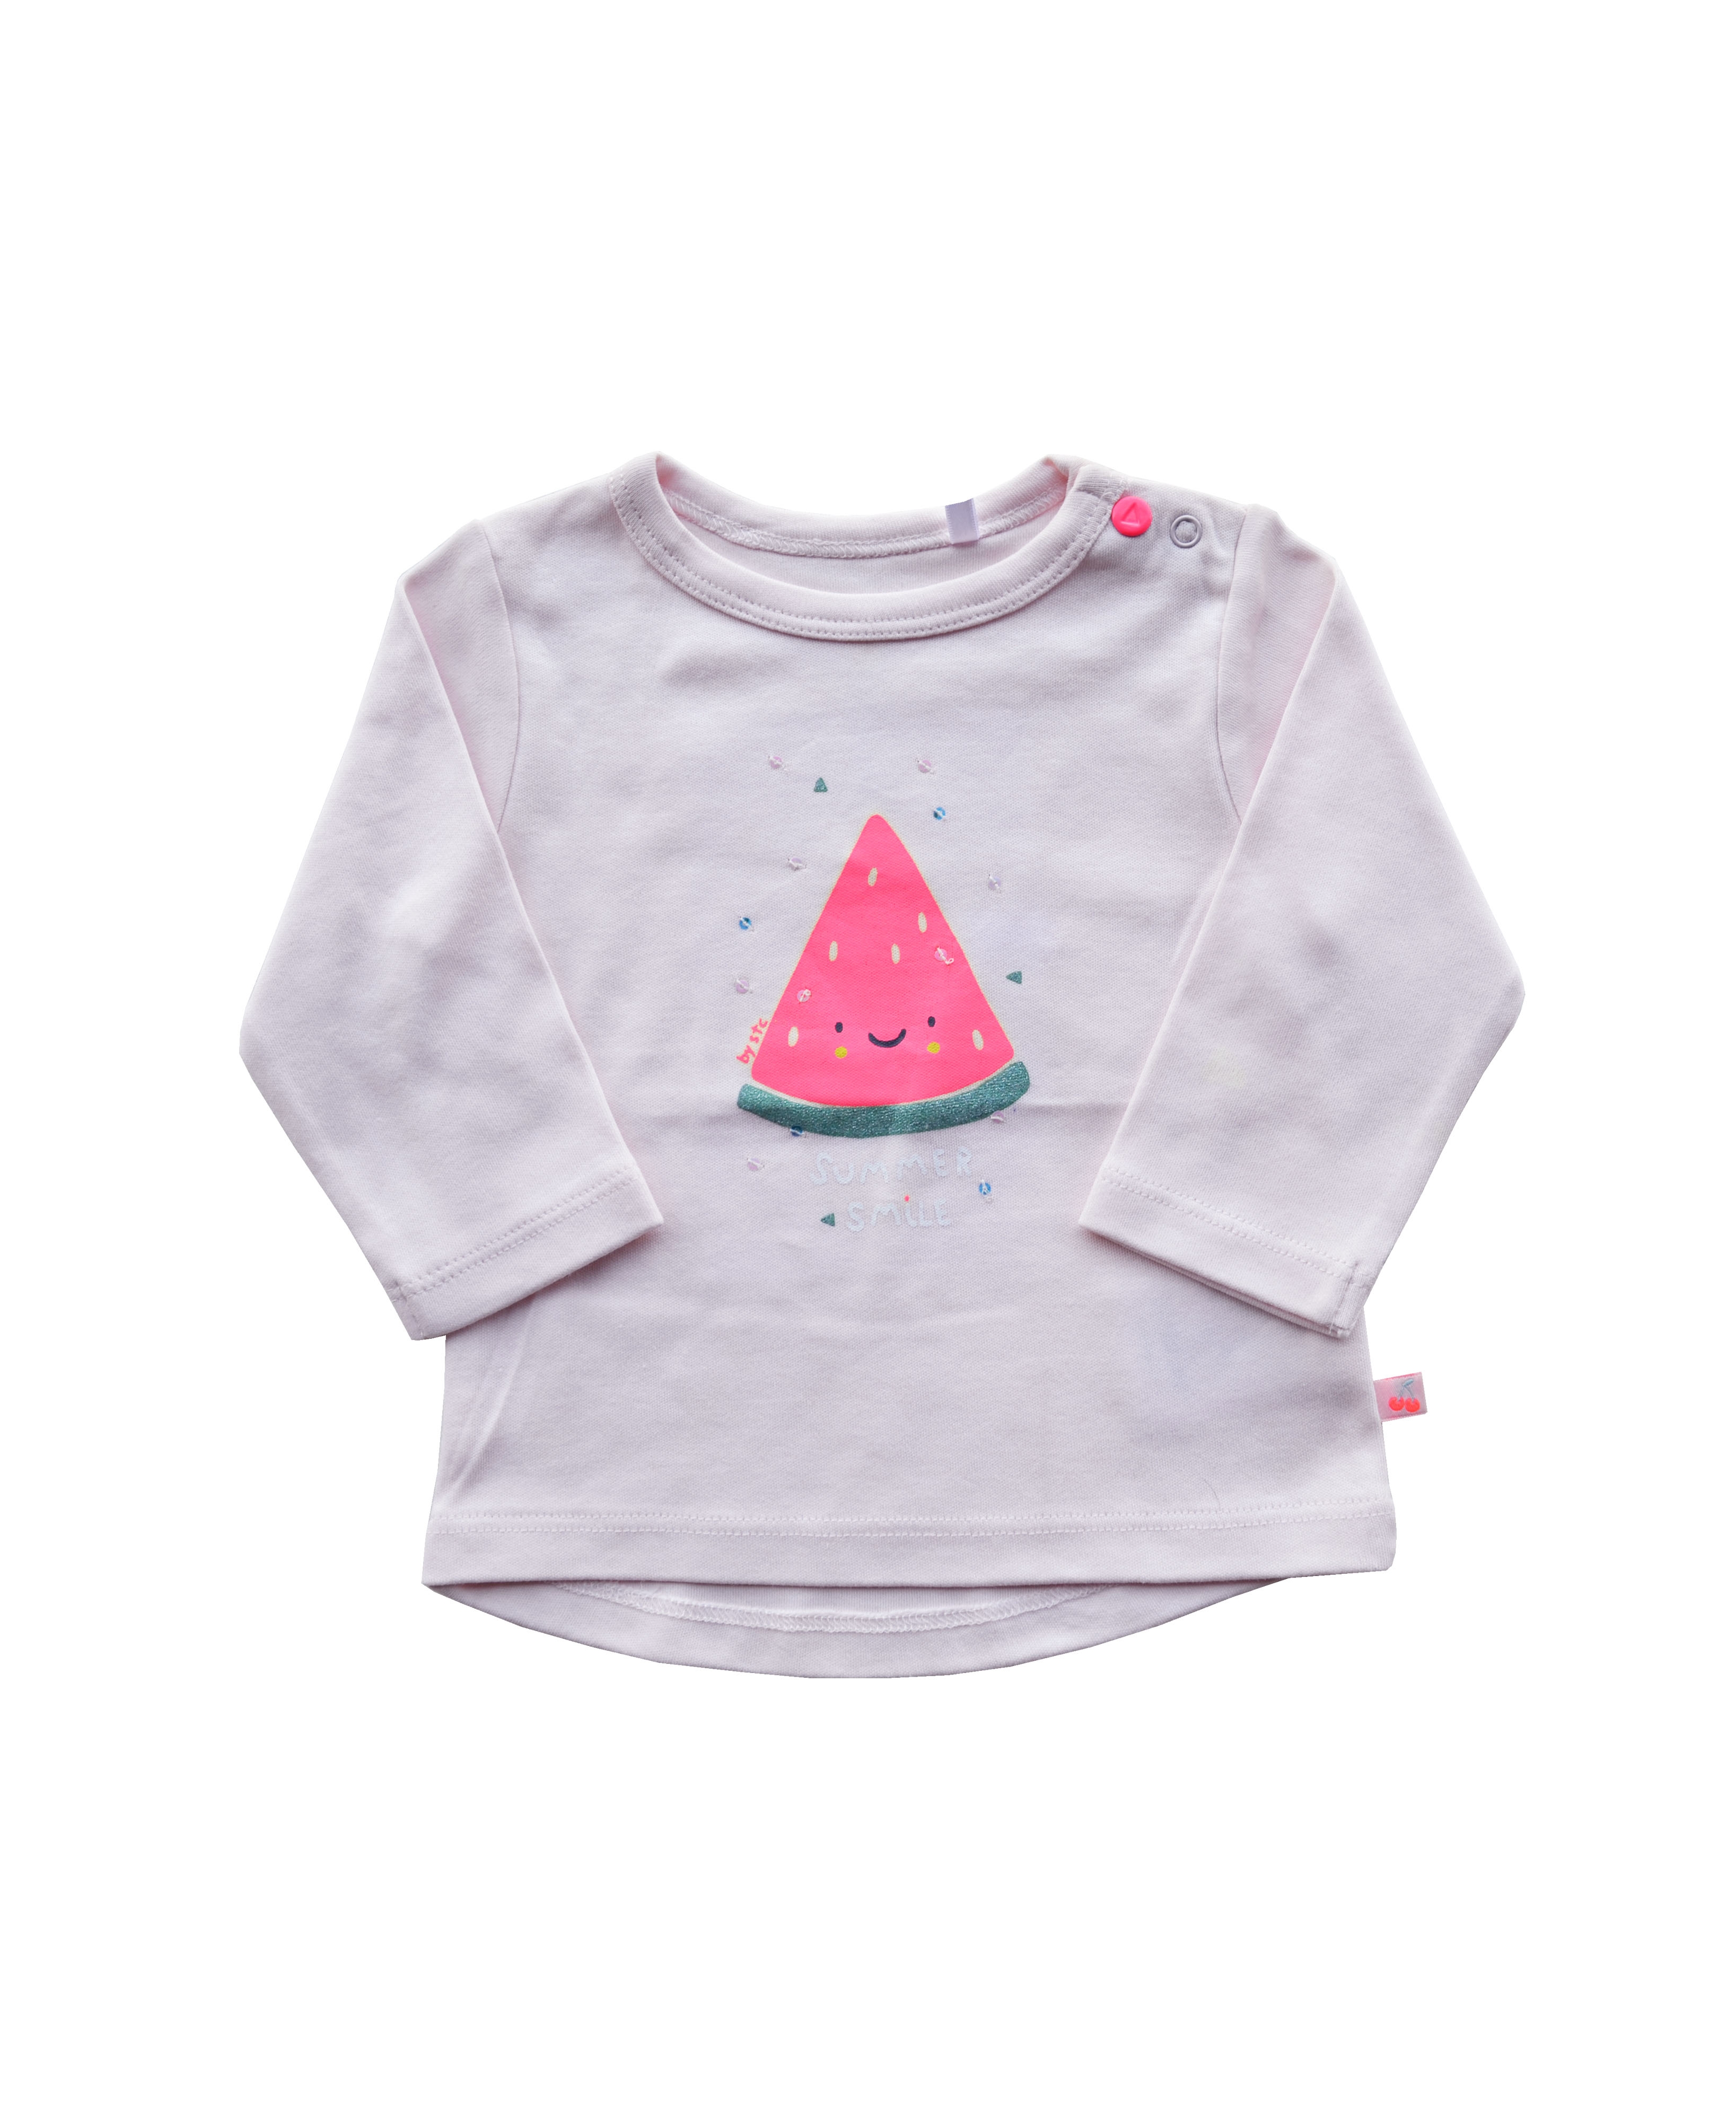 Babeez | Lt.Pink Girls T-Shirt with Watermelon print (100% Cotton Interlock Biowash) undefined